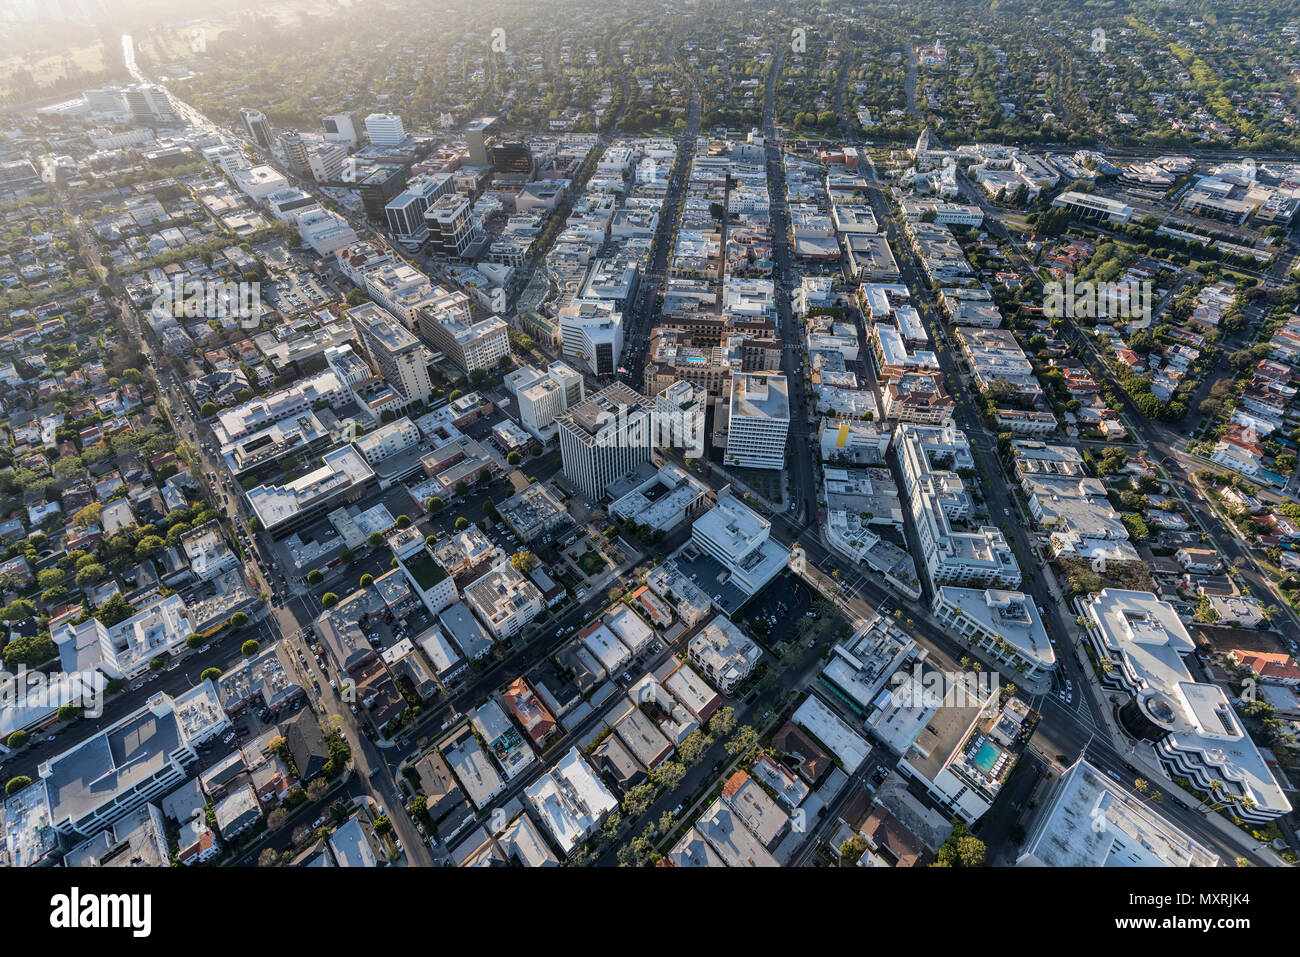 Los Angeles, Californie, USA - 18 Avril 2018 : Vue aérienne de Triangle Doré Business district, notamment Rodeo Drive et Wilshire Bl. Banque D'Images